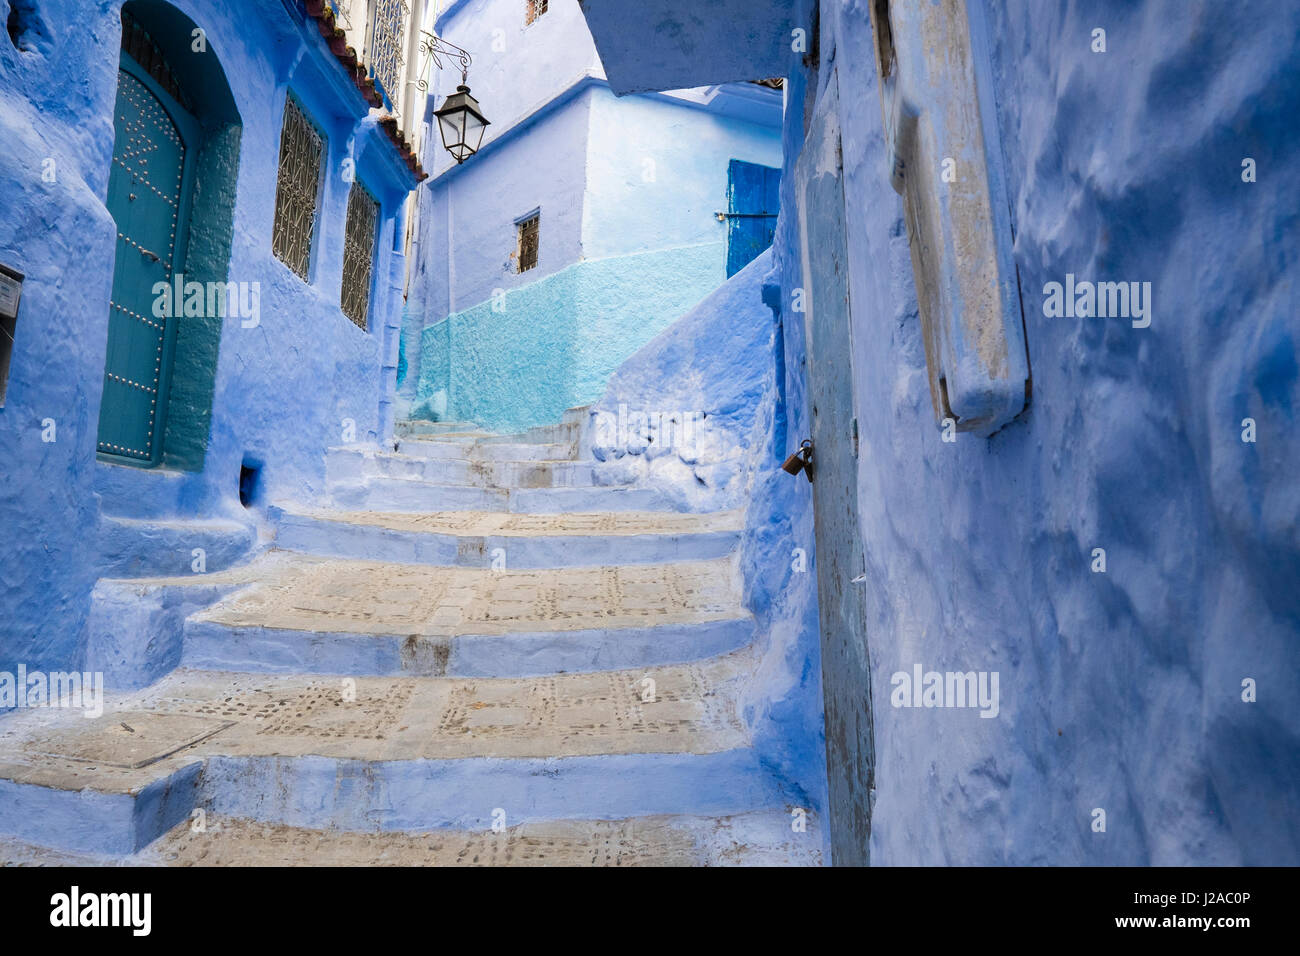 Marokko, Chefchaouen oder Chaouen. Es wird am meisten gemerkt für seine kleinen schmalen Straßen und Stadtteile gemalt unterschiedlichsten Farben blau. Stockfoto